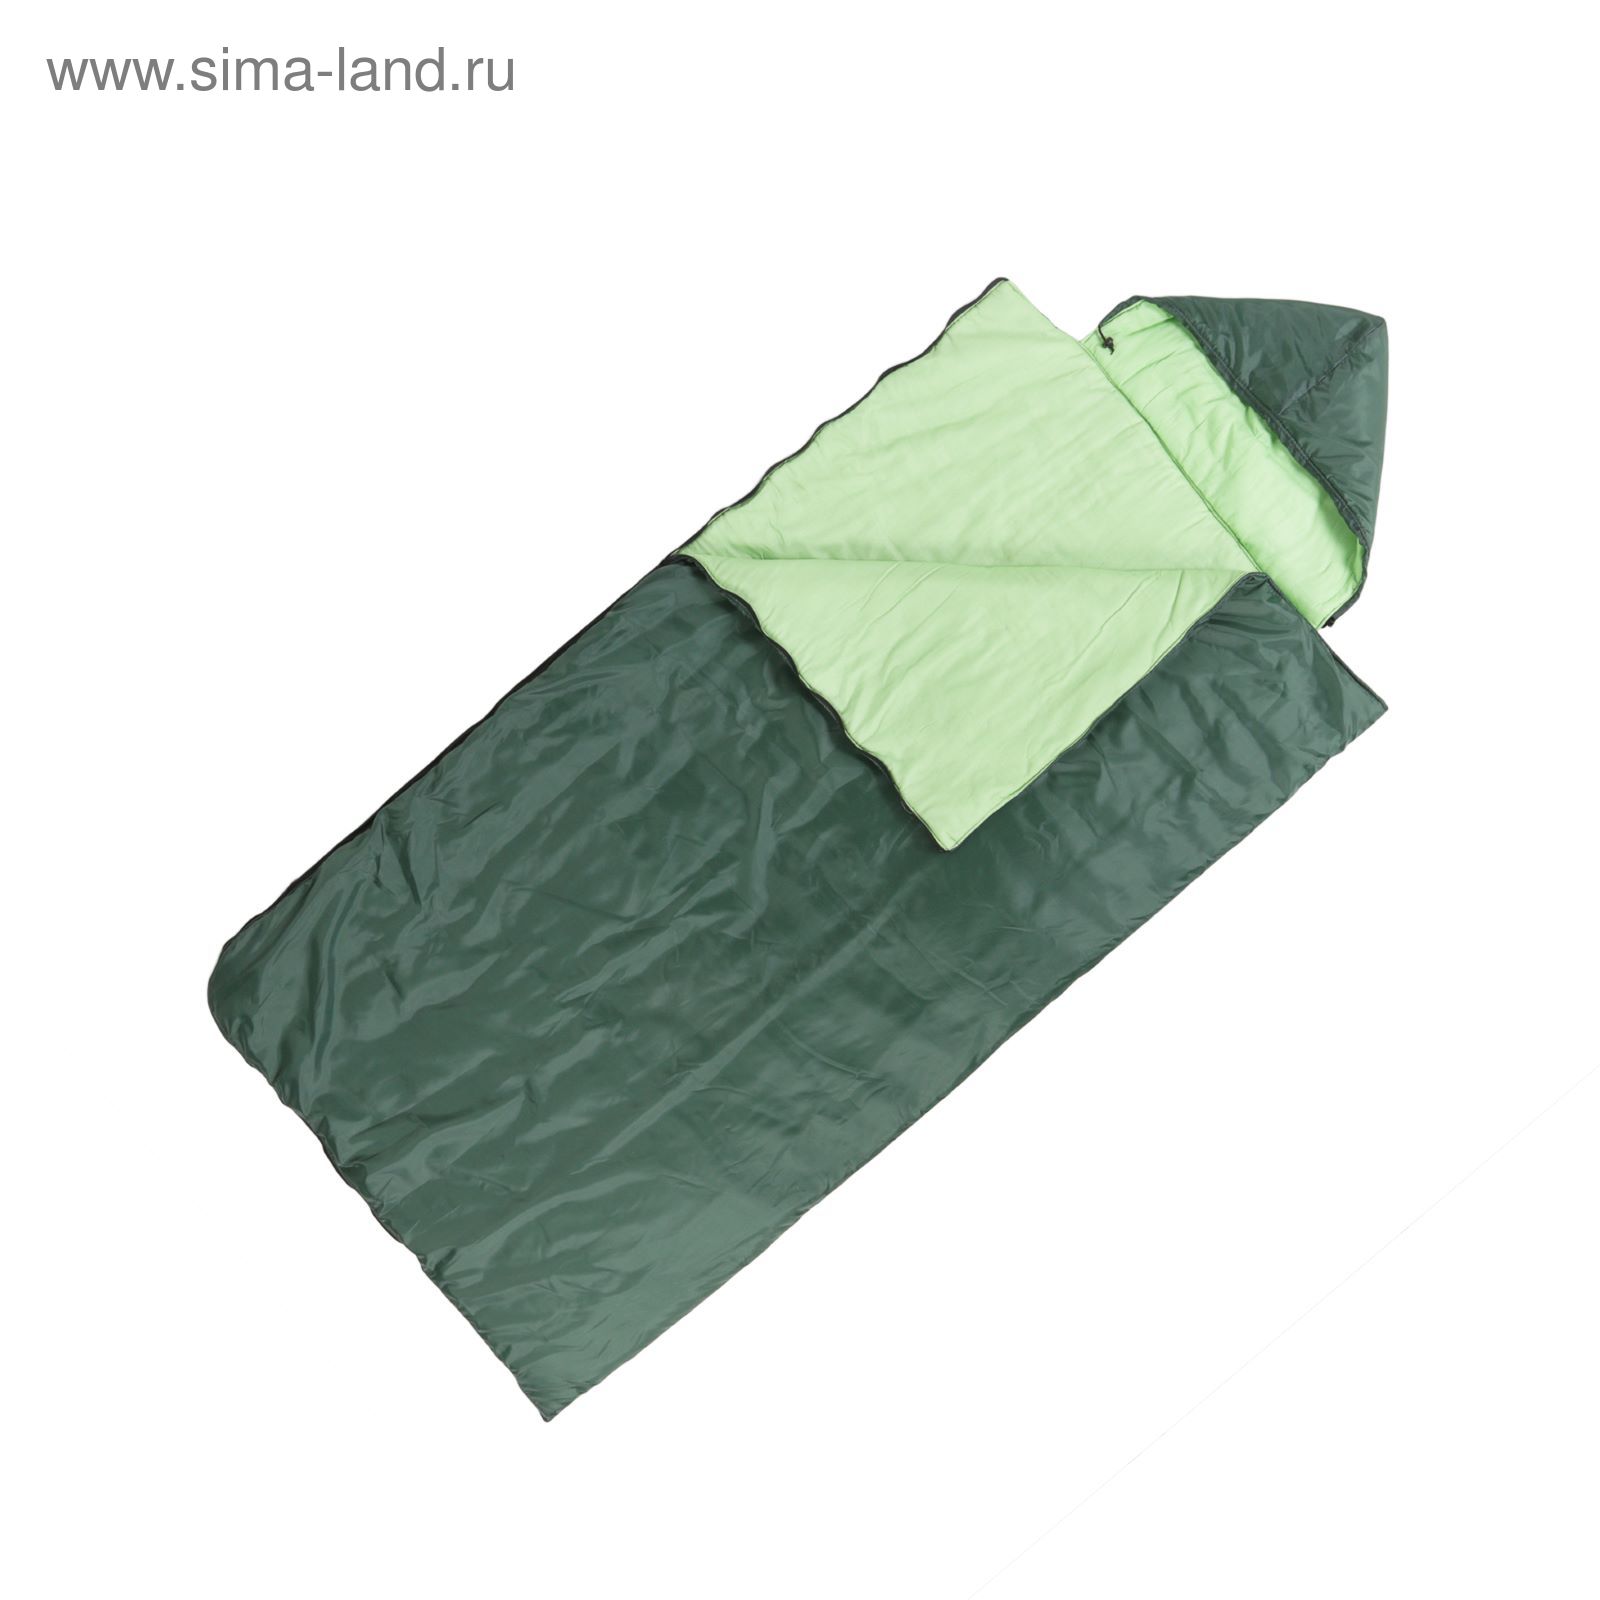 Спальный мешок "Комфорт" 3-х слойный, с капюшоном, увеличенный, цвет МИКС